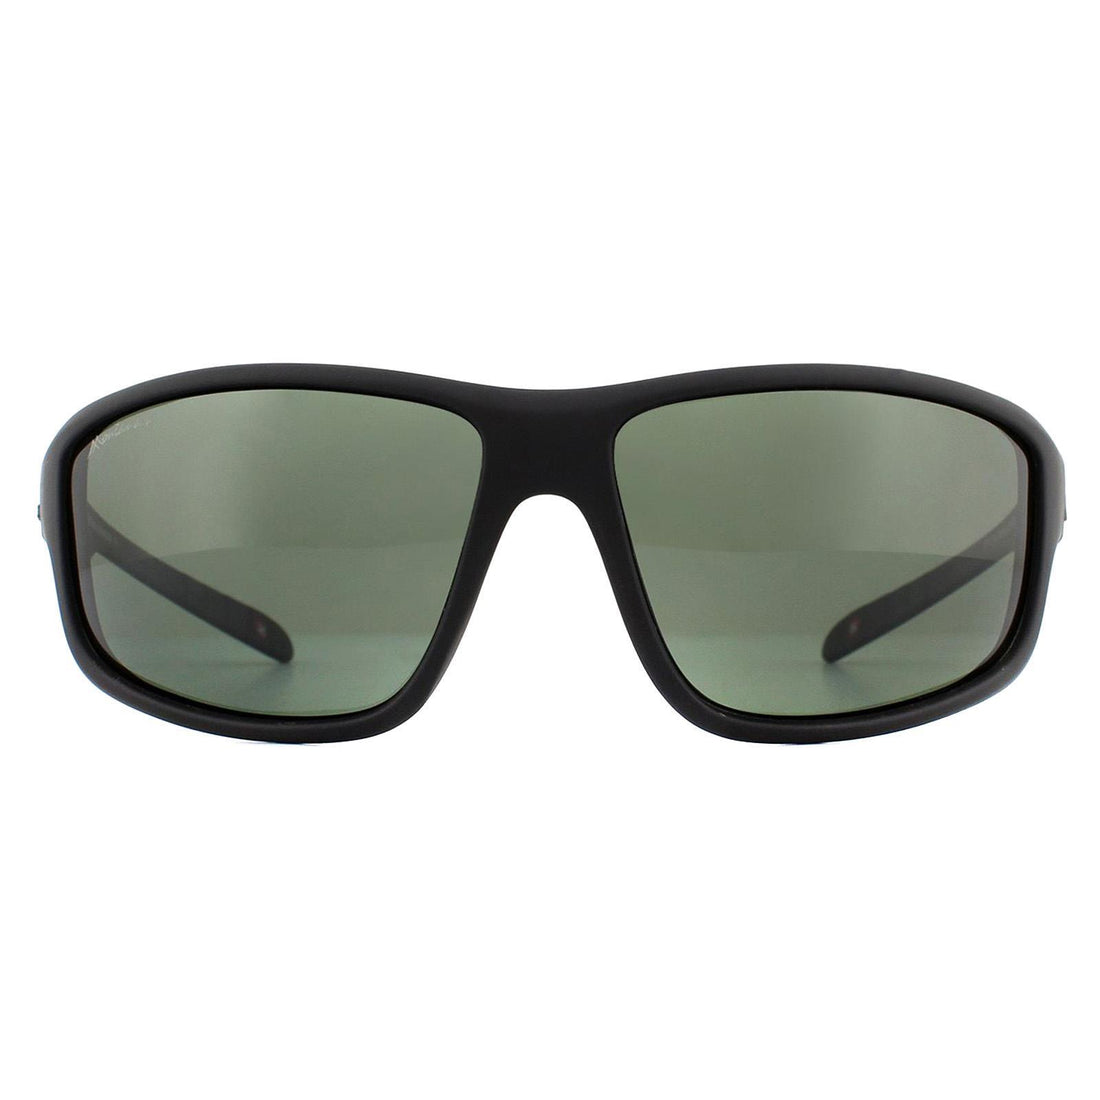 Montana SP313 Sunglasses